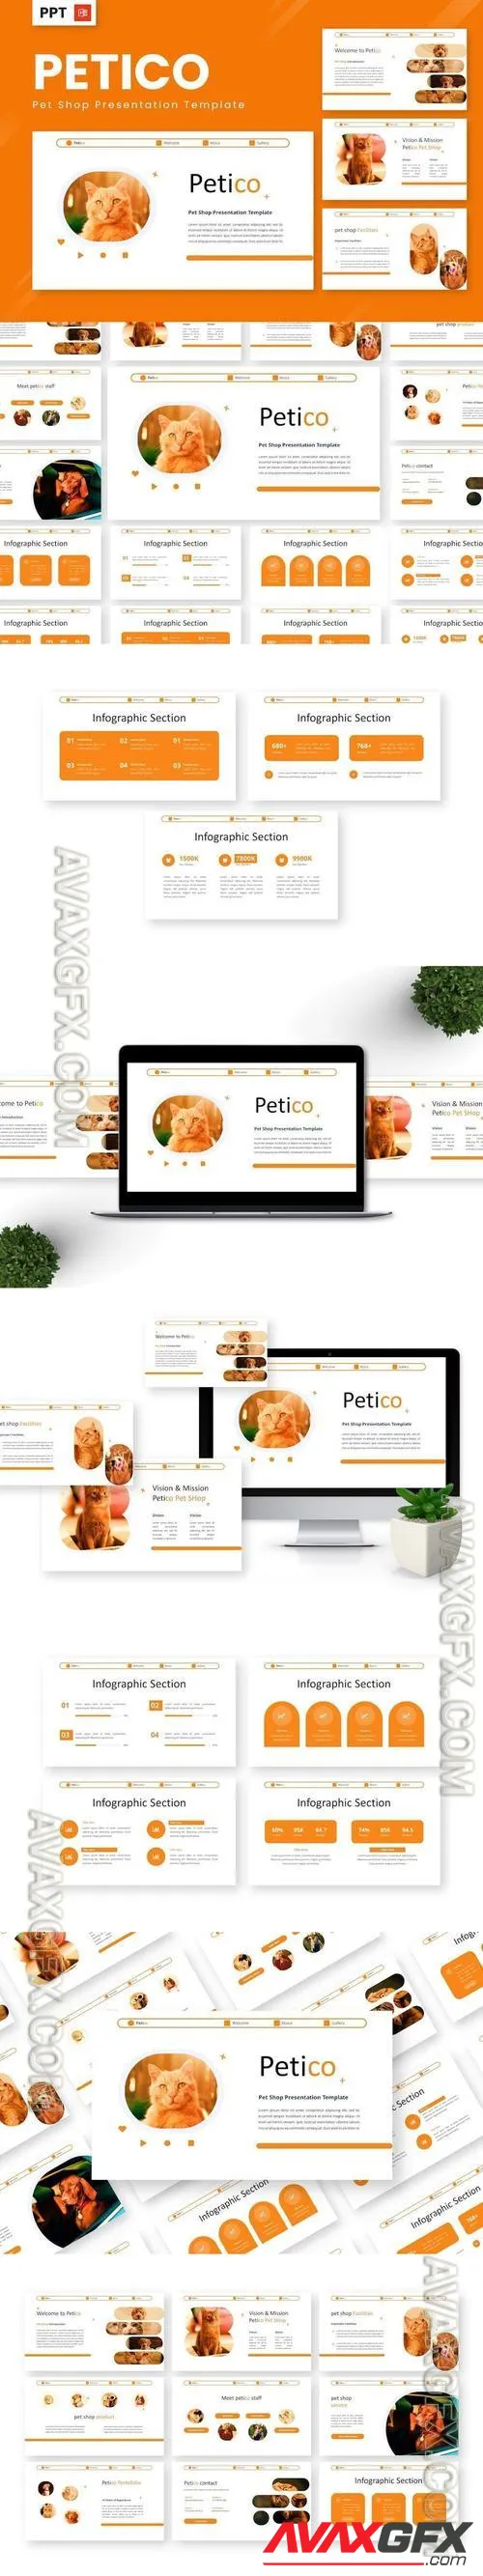 Petico - Pet Shop Powerpoint Templates